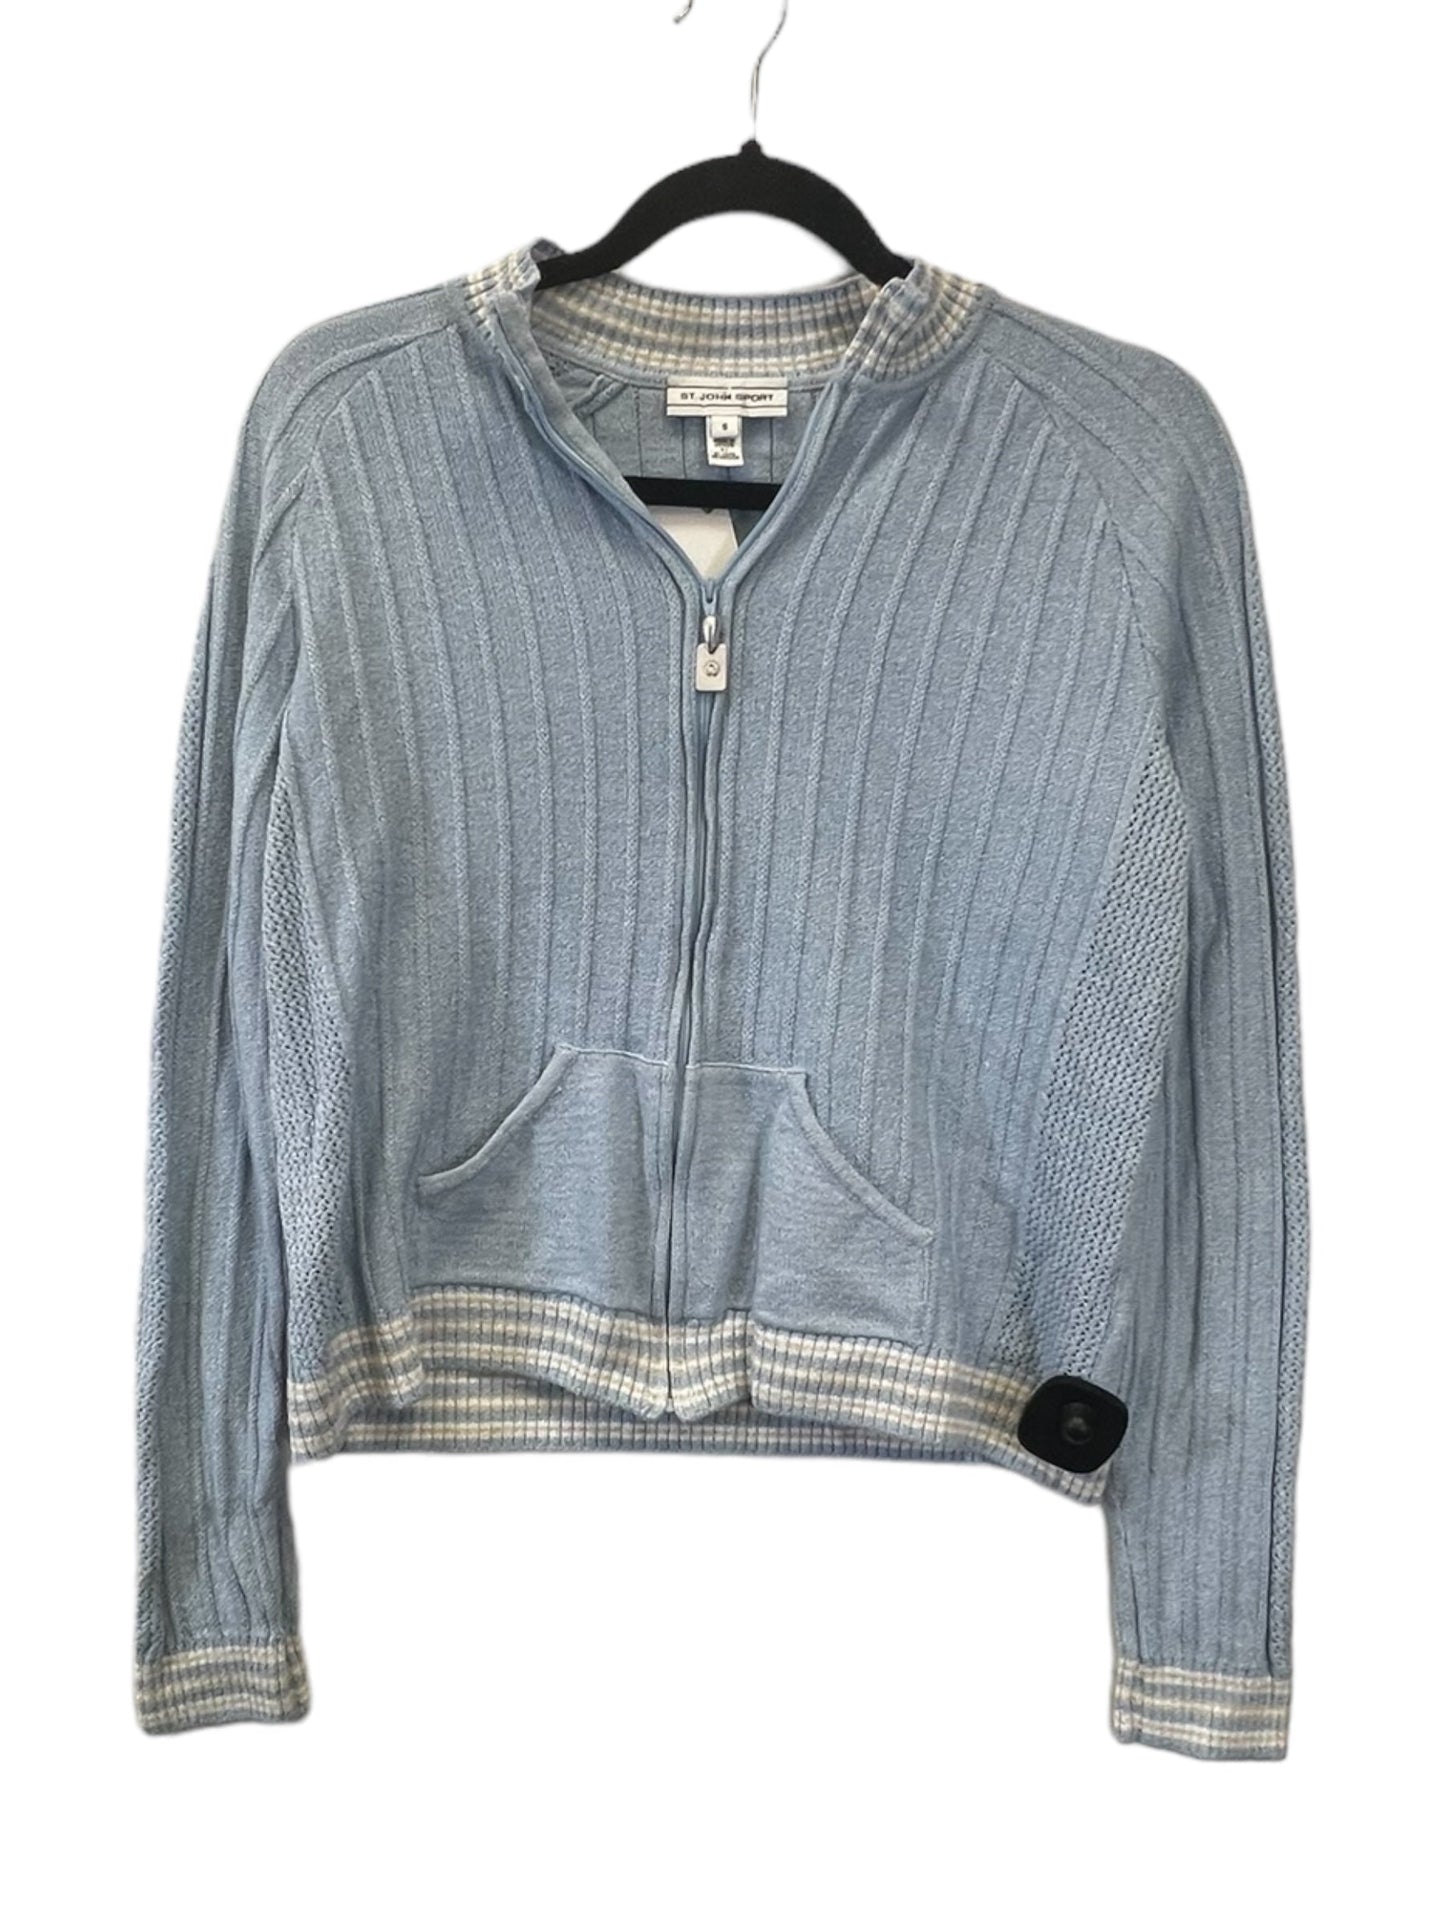 Blue & White Sweater Designer St. John, Size S